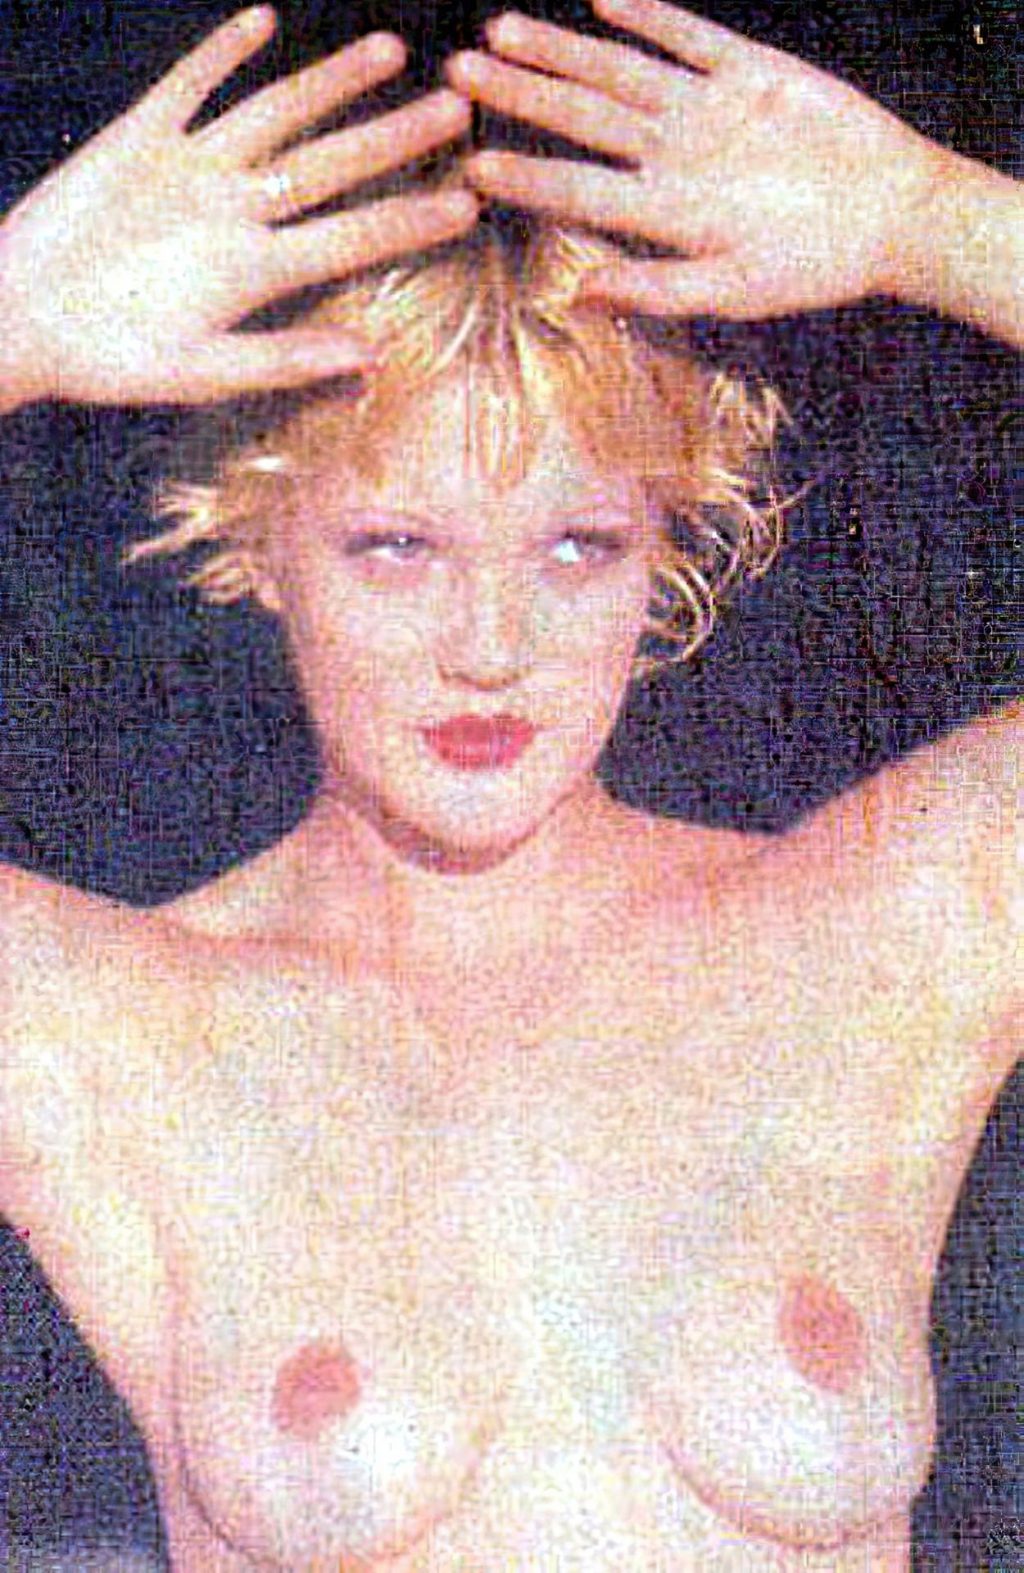 Barrymore photos drew nude Nude celeb